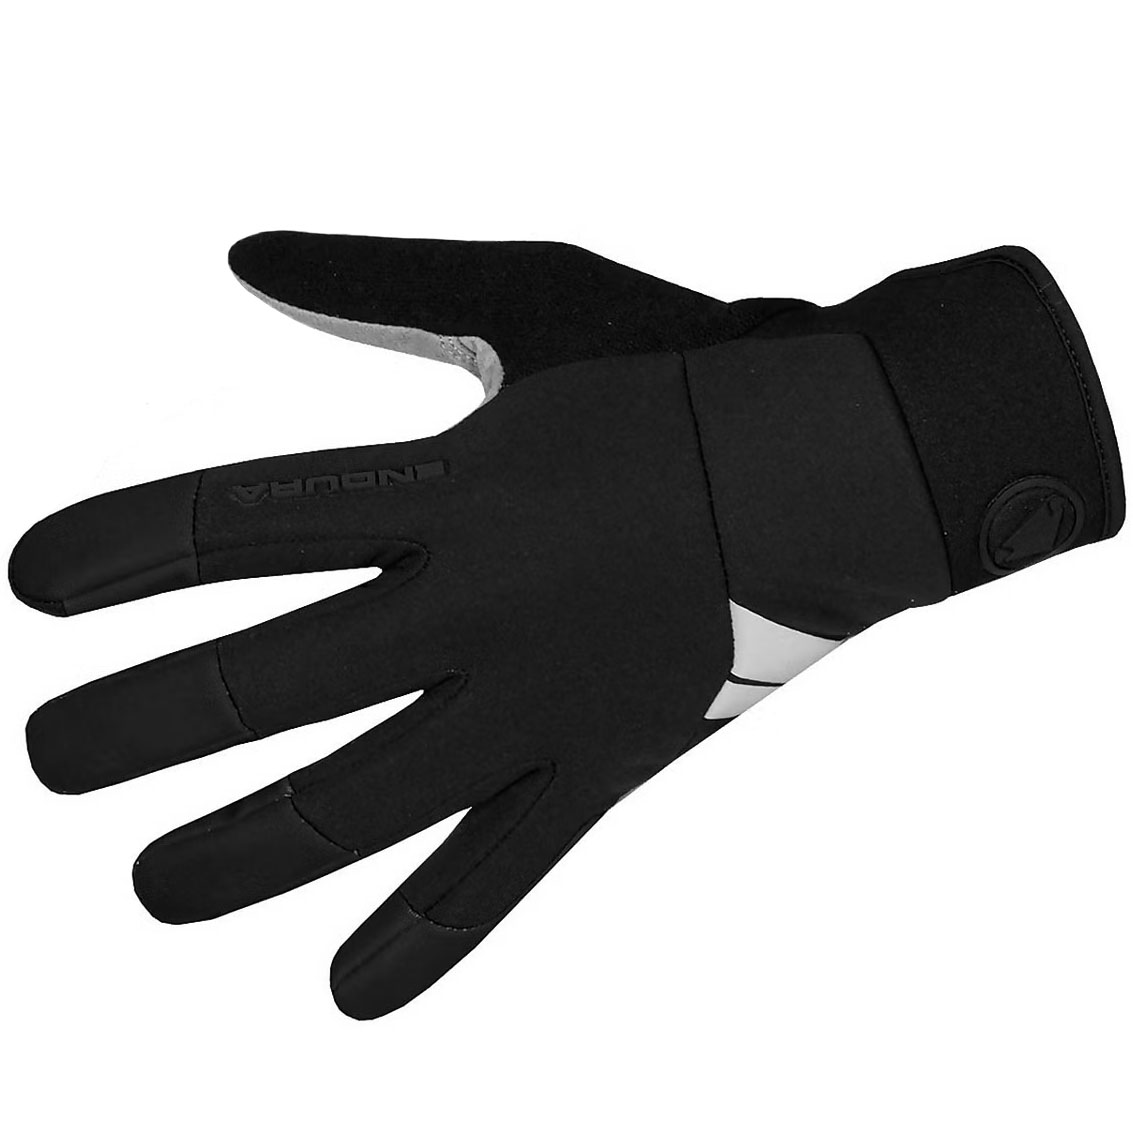 Productfoto van Endura Windchill Handschoenen - black